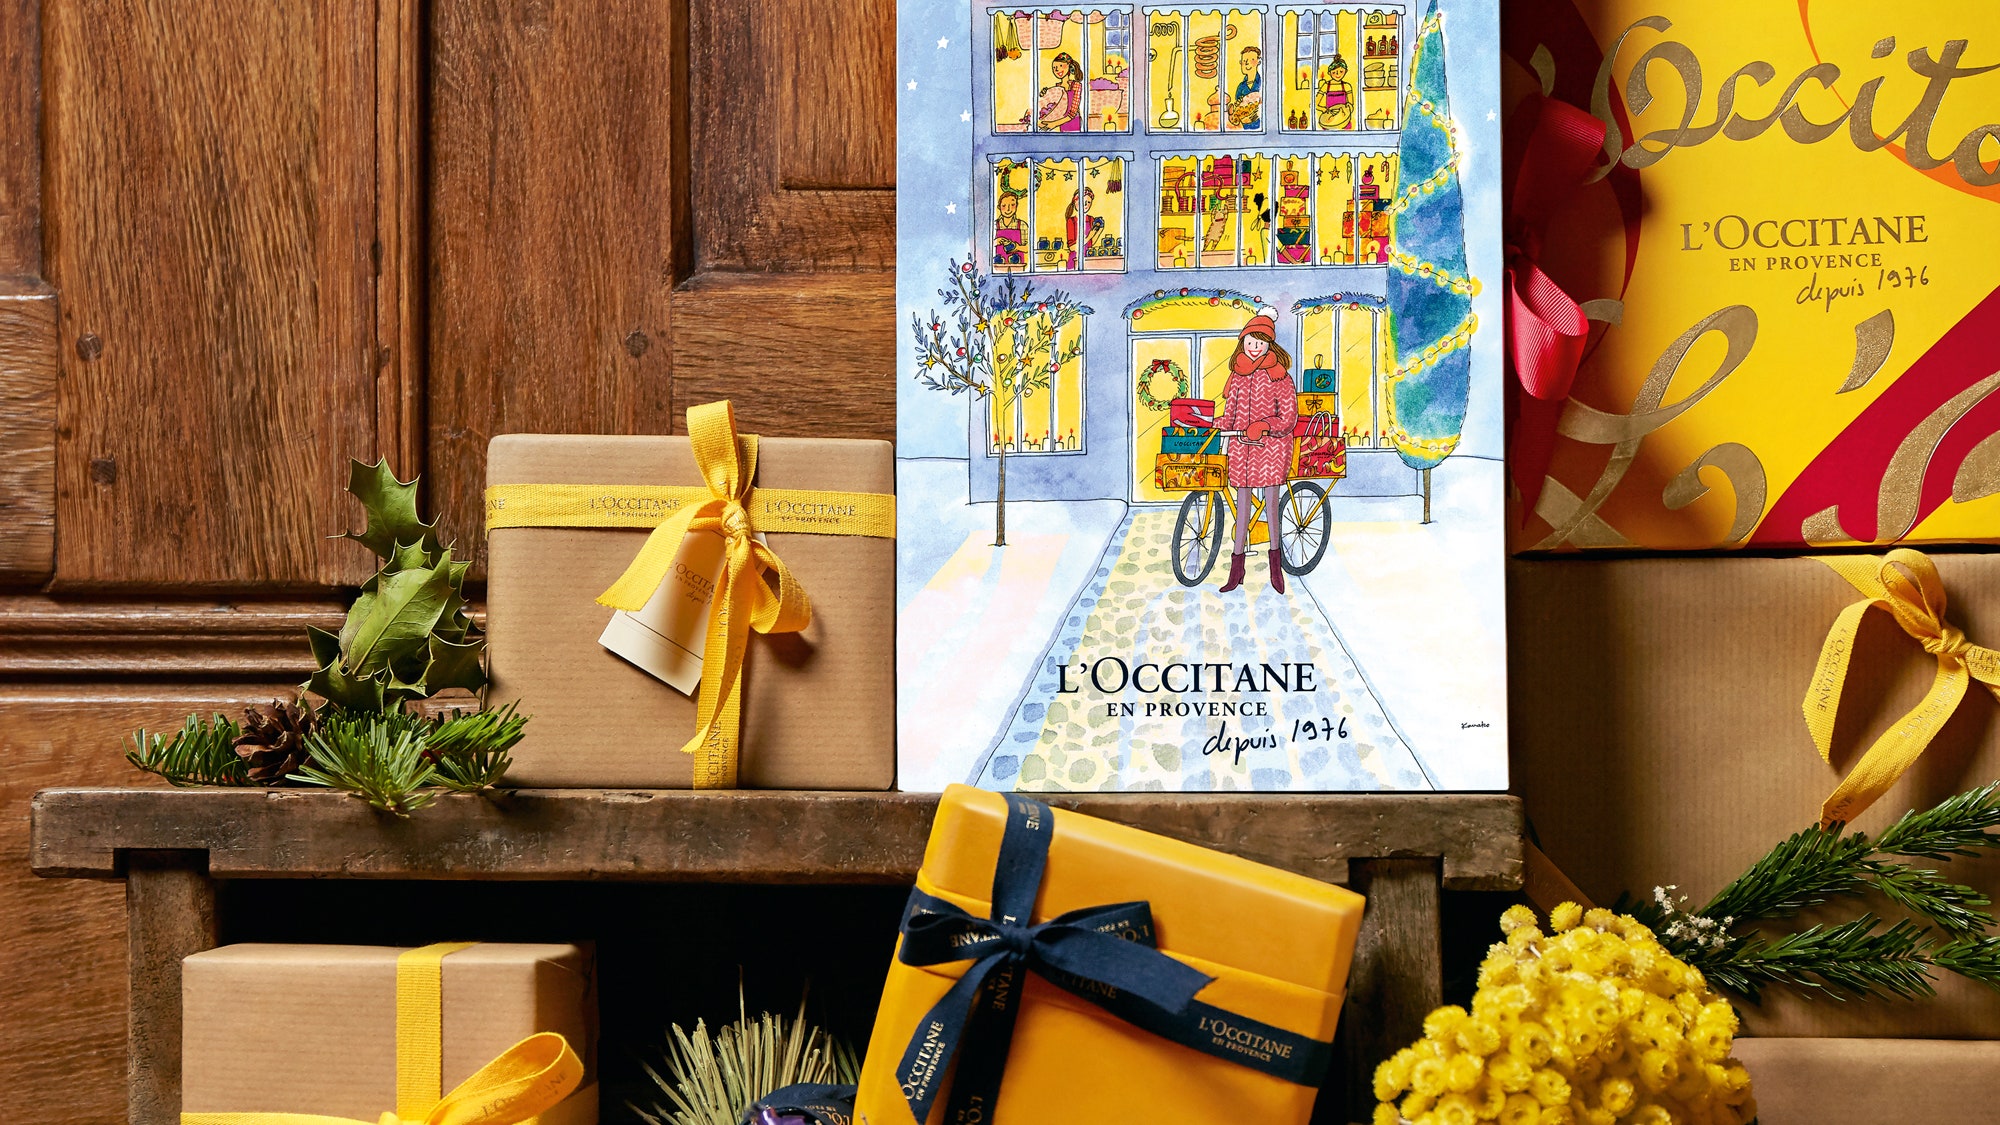 Адвент календарь от L'Occitane с бьютисредствами в окошках | Allure